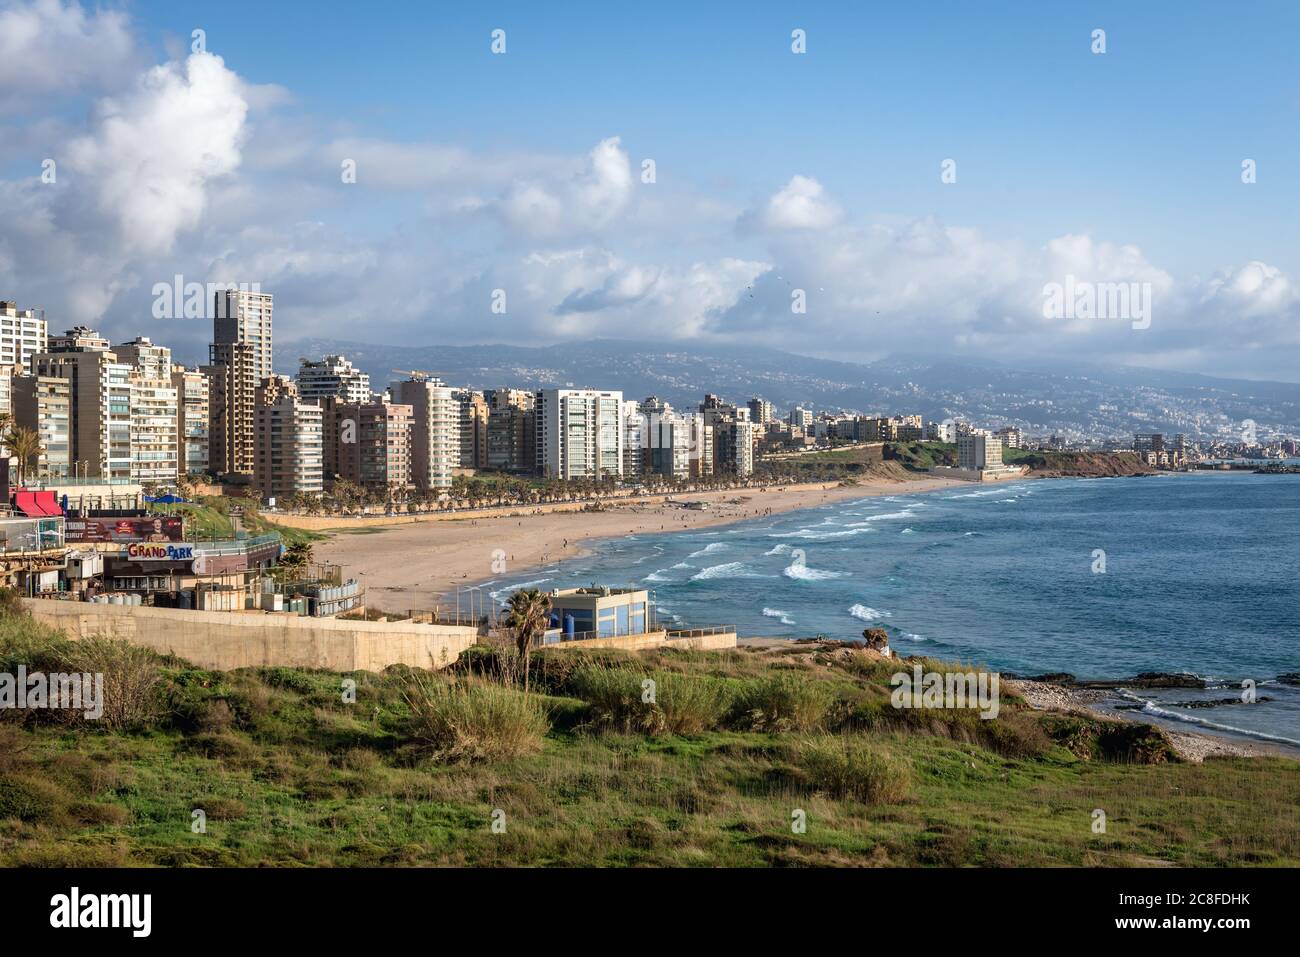 Vue aérienne avec la plage publique de Ramlet al Baida située le long de l'extrémité sud de la promenade de la Corniche Beyrouth à Beyrouth, Liban Banque D'Images